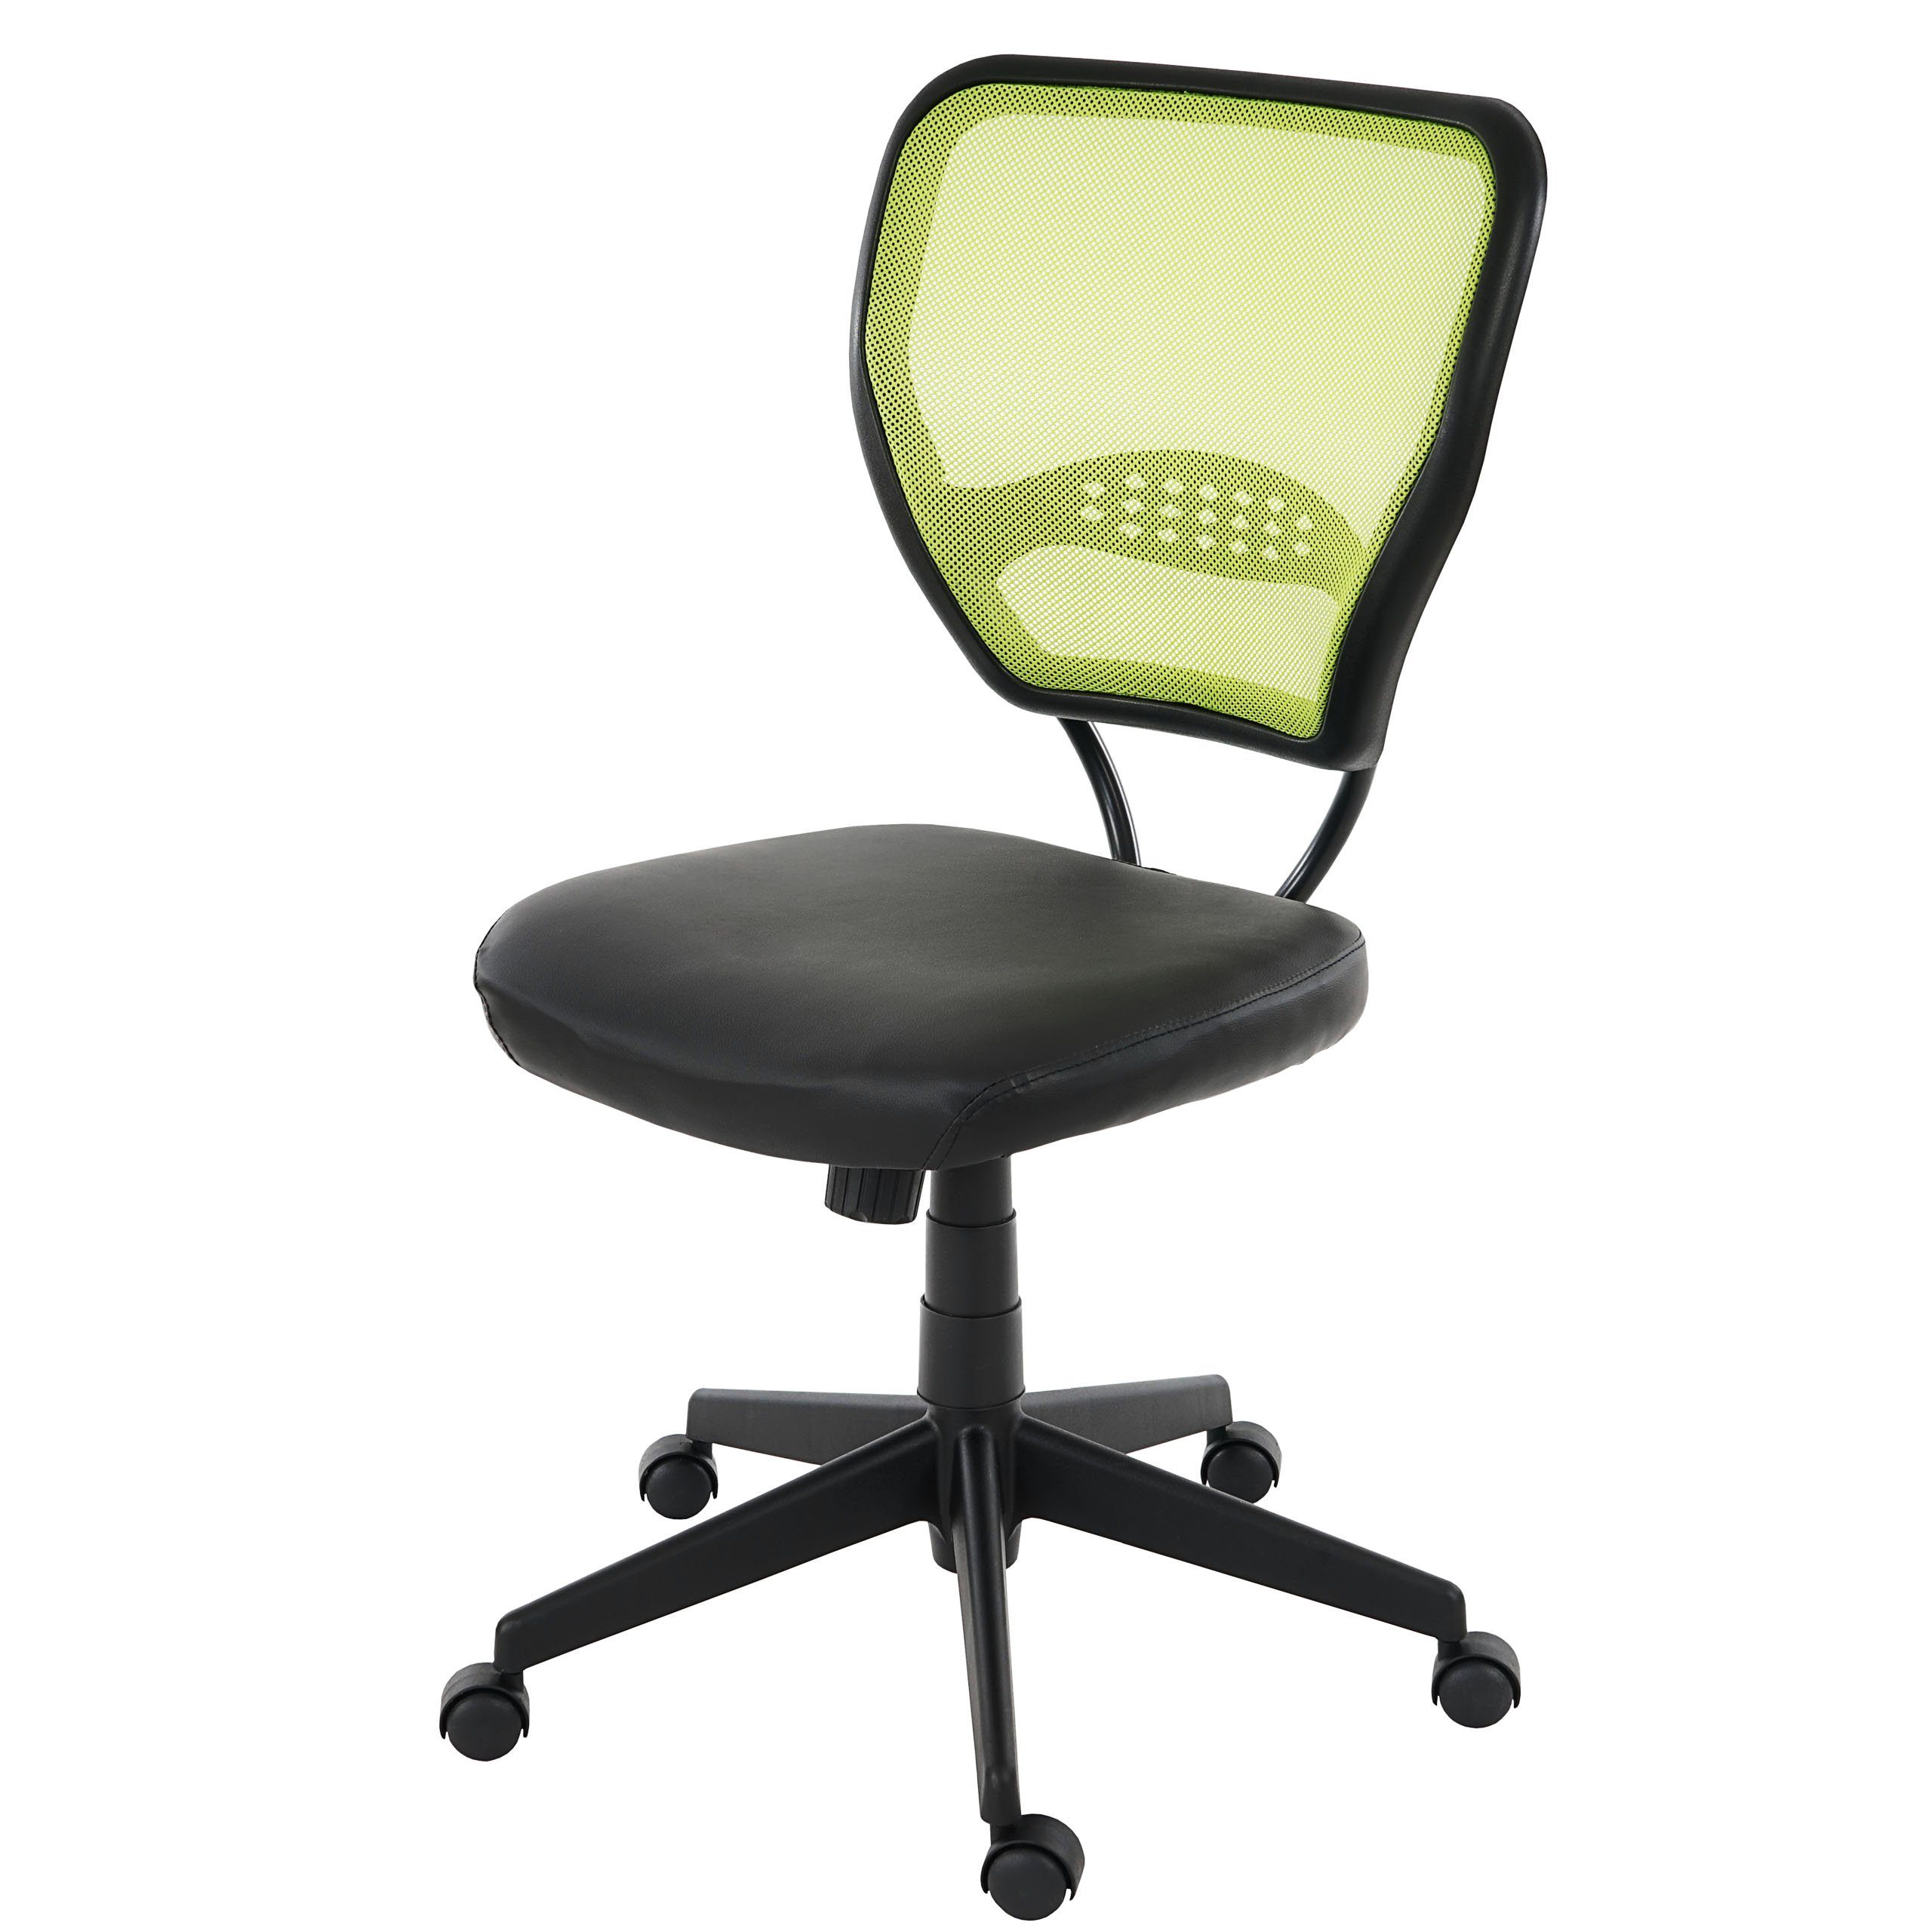 MCW Schreibtischstuhl Chicago Kunstleder, Verstellbare Wipptechnik, Bequemes Sitzen, bis zu 150 kg belastbar schwarz,grün